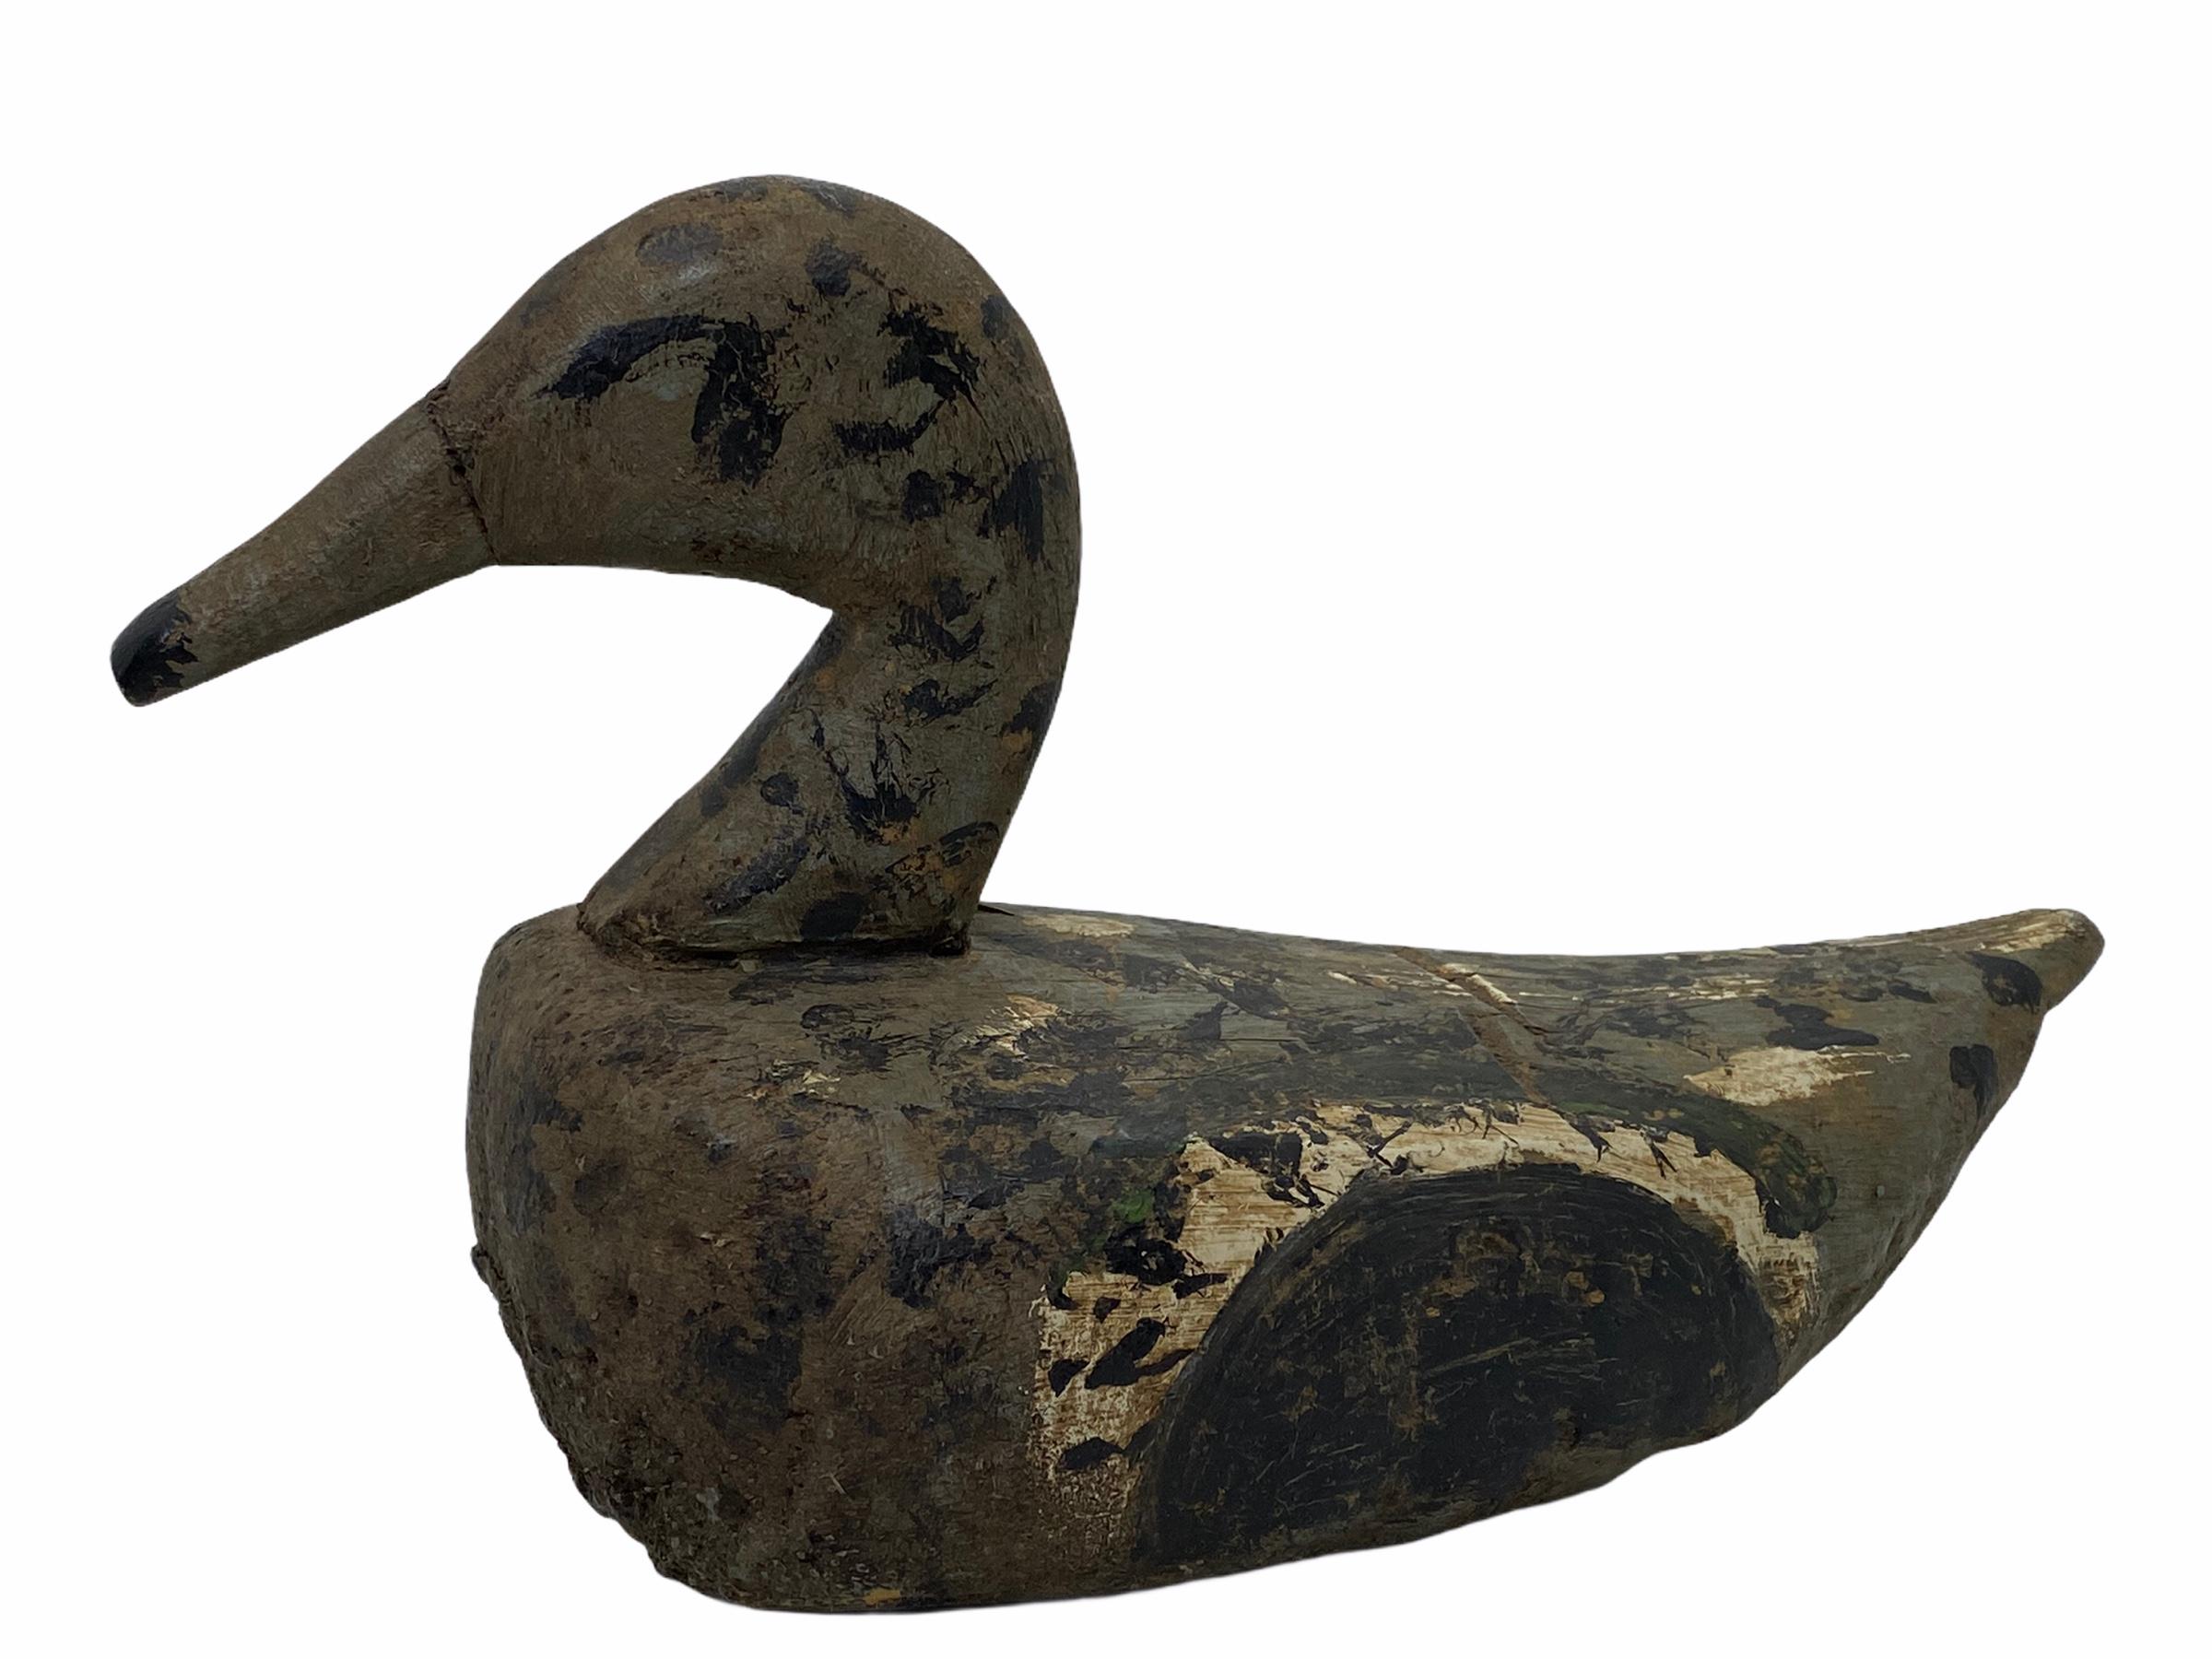 Diese handgeschnitzte und handbemalte Entenattrappe wurde in Deutschland bei einem Nachlassverkauf gefunden und ist perfekt für den Sammler. Die Farbe wurde von einem früheren Jäger gut genutzt und ist im Laufe der Zeit verblasst, obwohl die